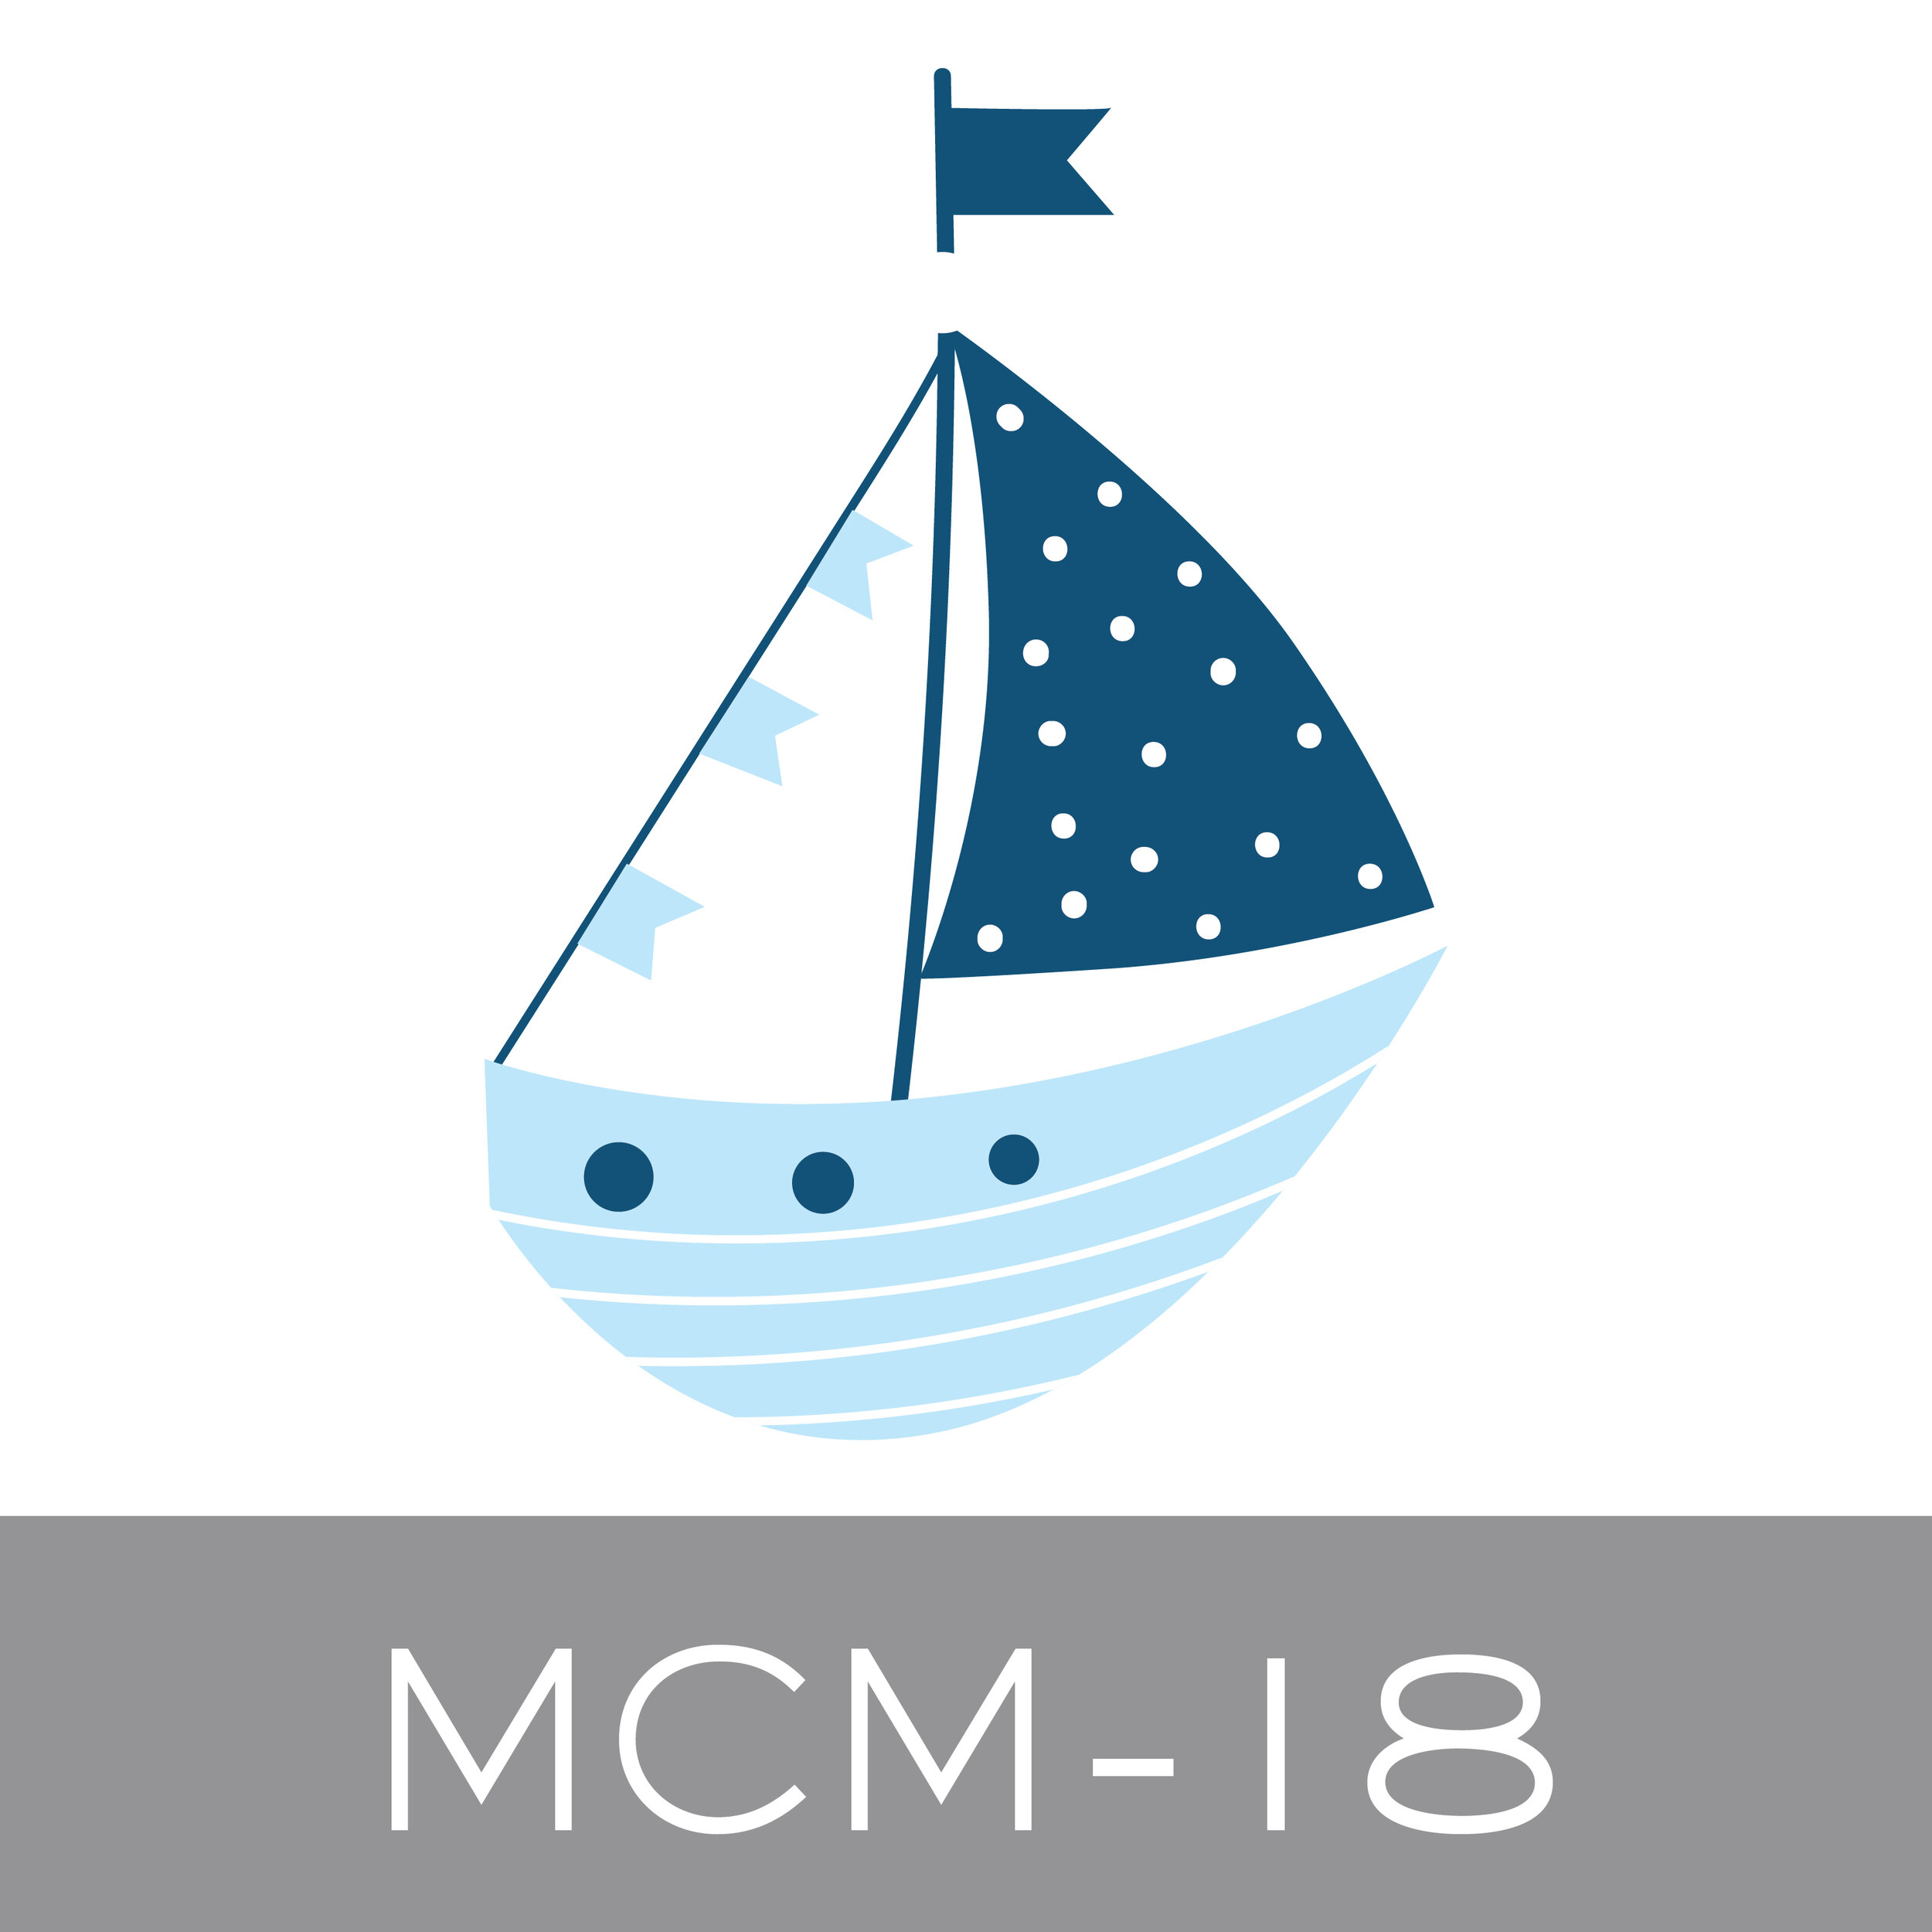 MCM-18.jpg